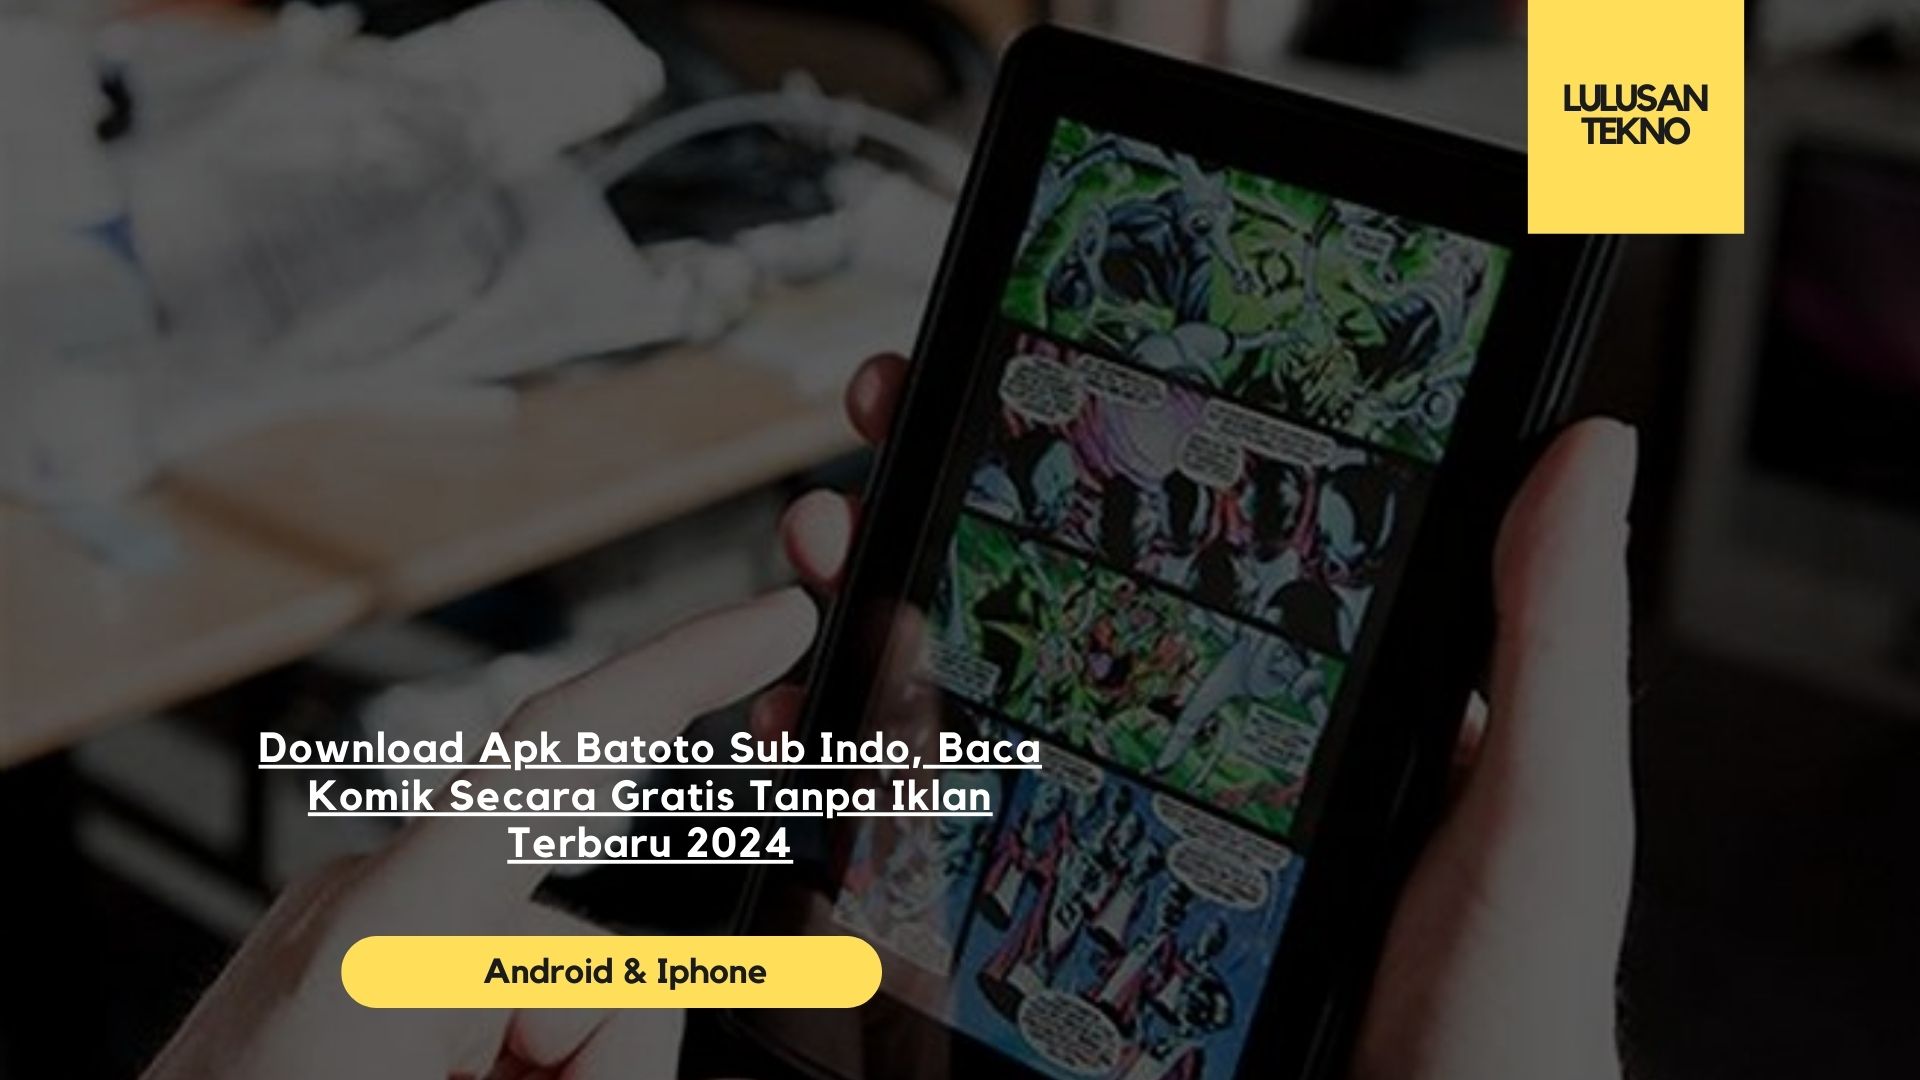 Download Apk Batoto Sub Indo, Baca Komik Secara Gratis Tanpa Iklan Terbaru 2024